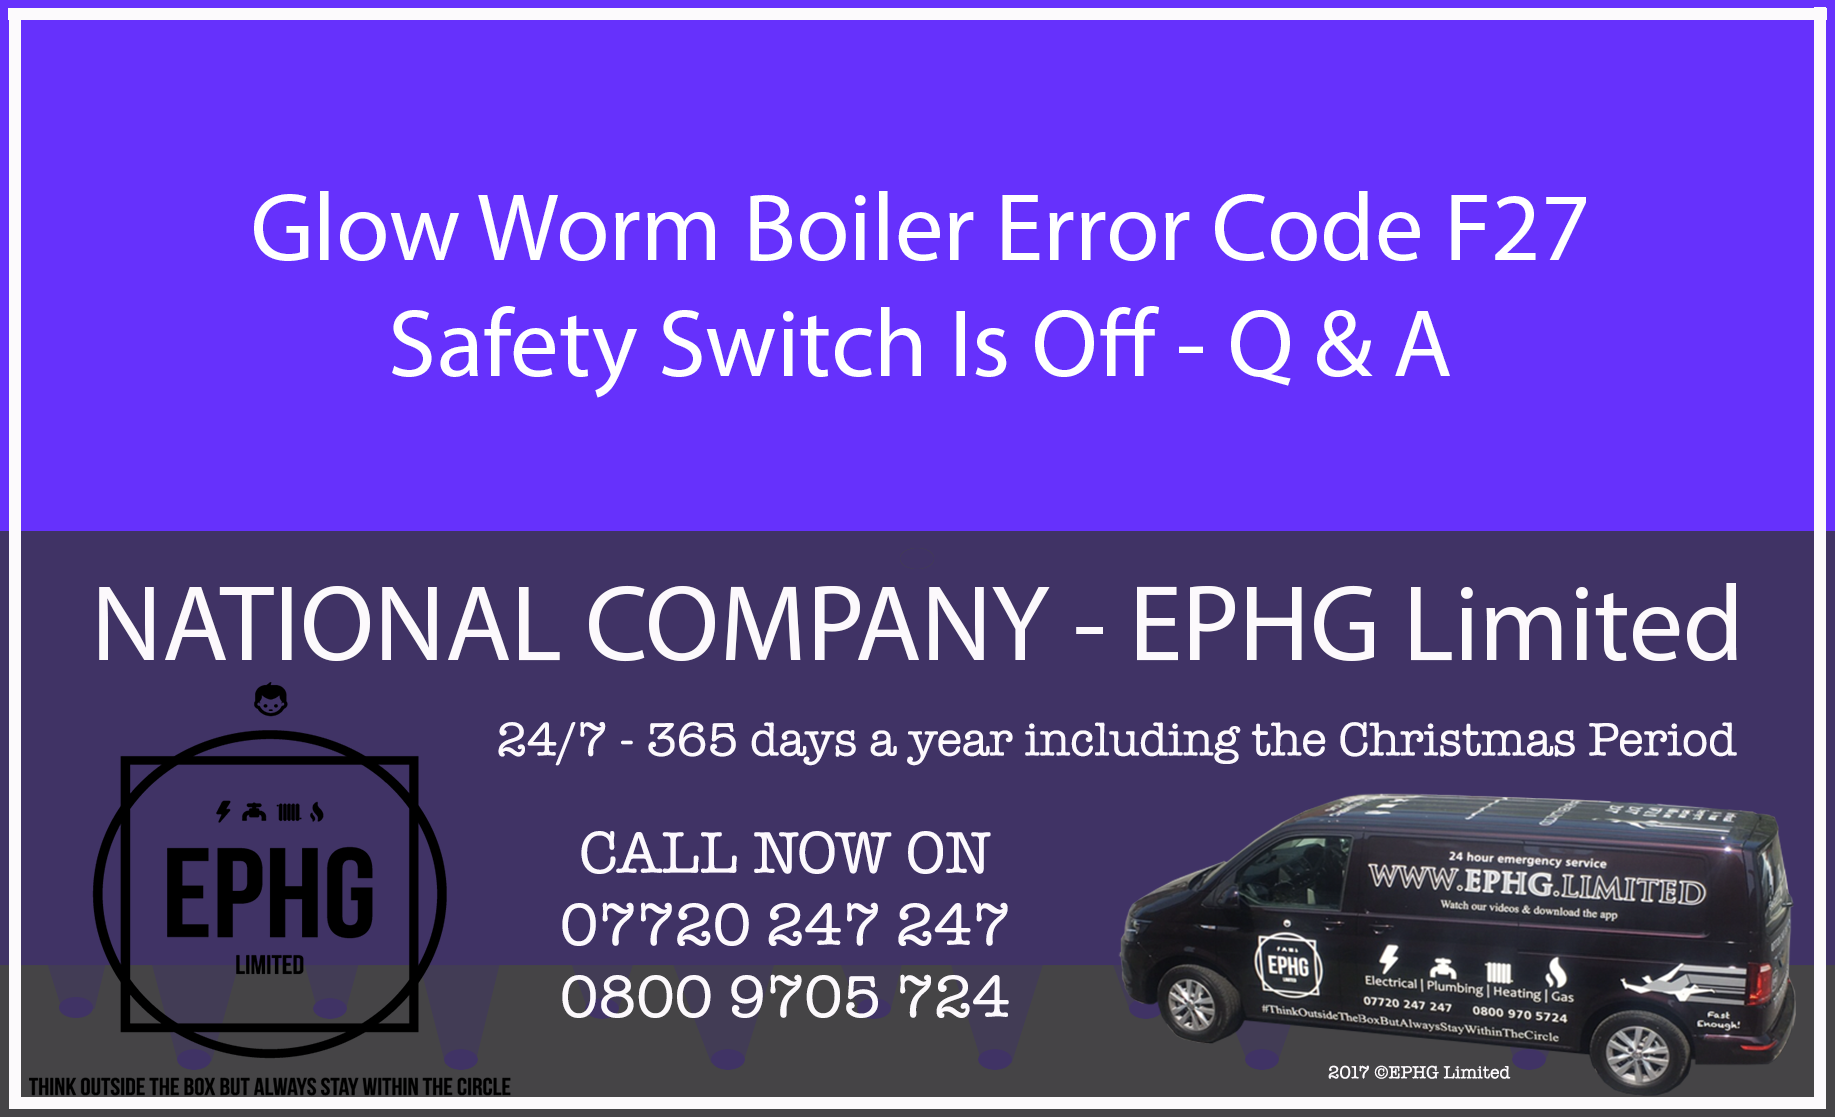 Glow-Worm boiler error code F.27